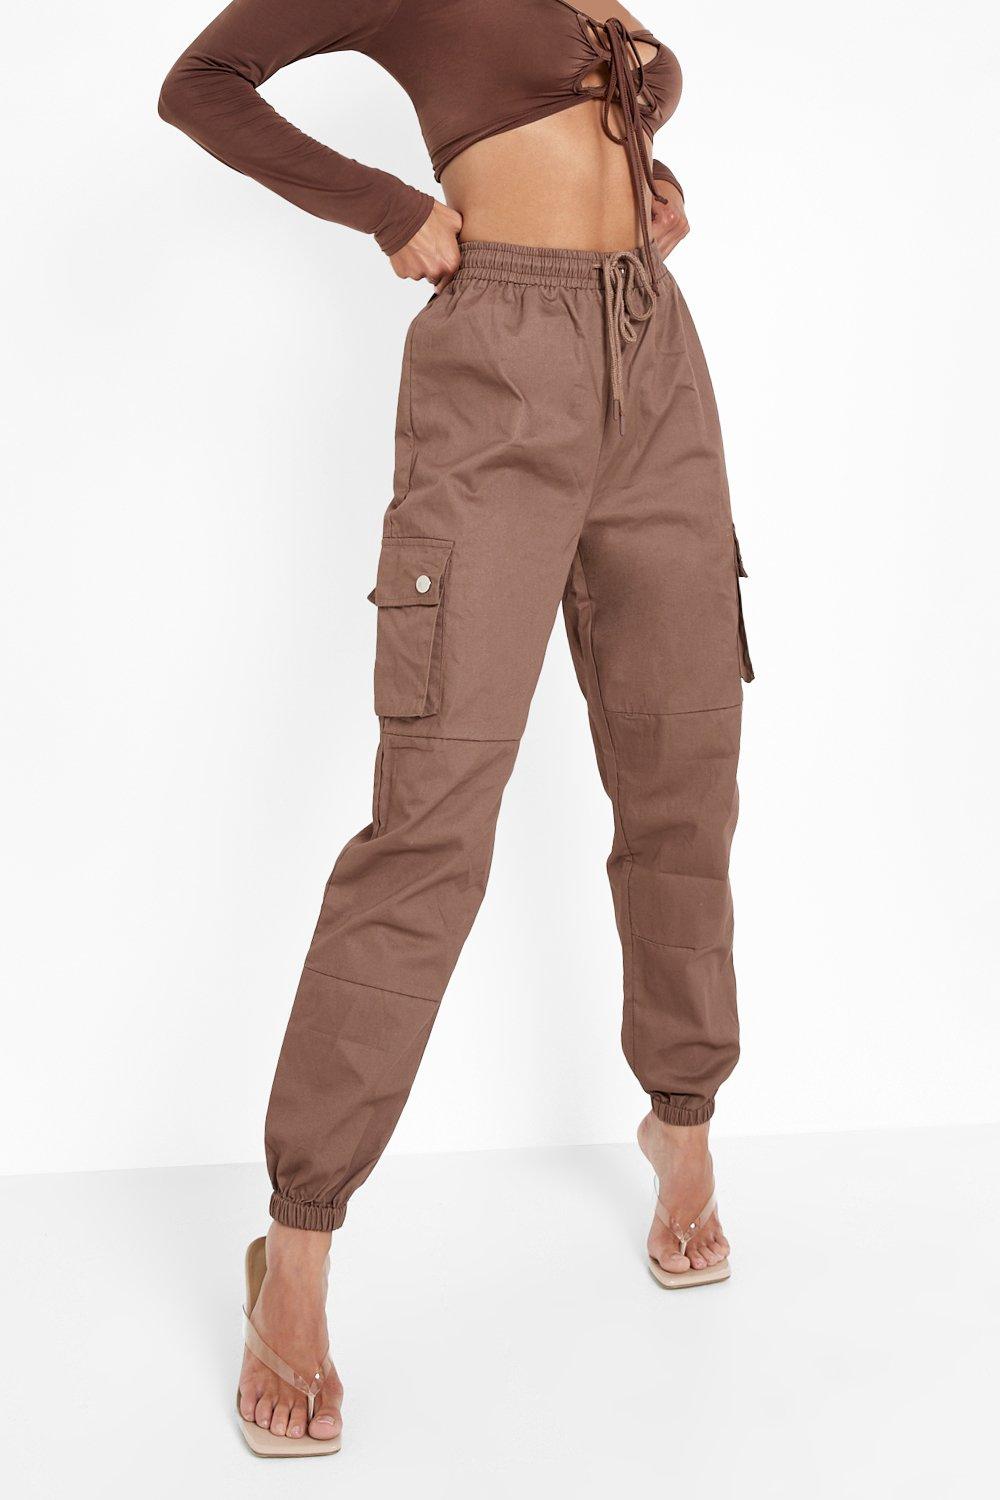 Women's High Waist Woven Pocket Cargo Trousers